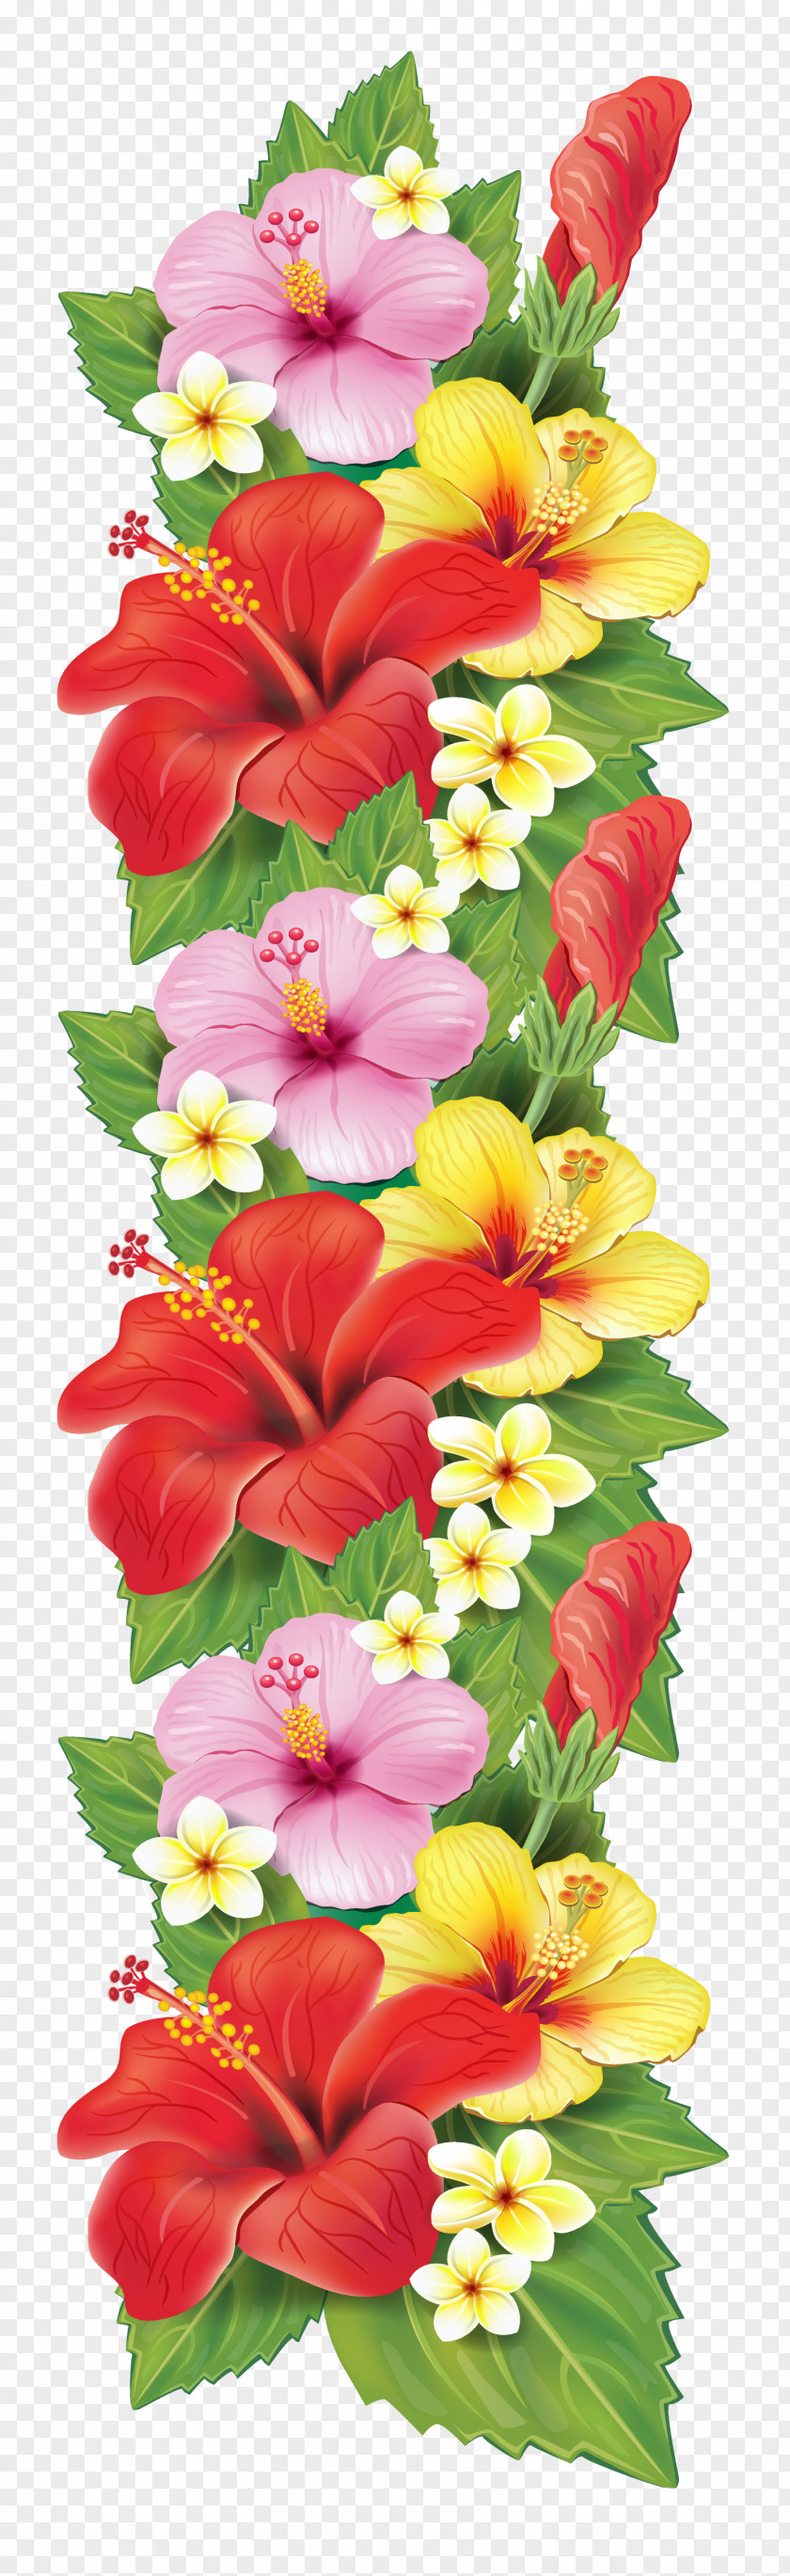 Flowers Flower Bouquet Decorative Arts Clip Art PNG